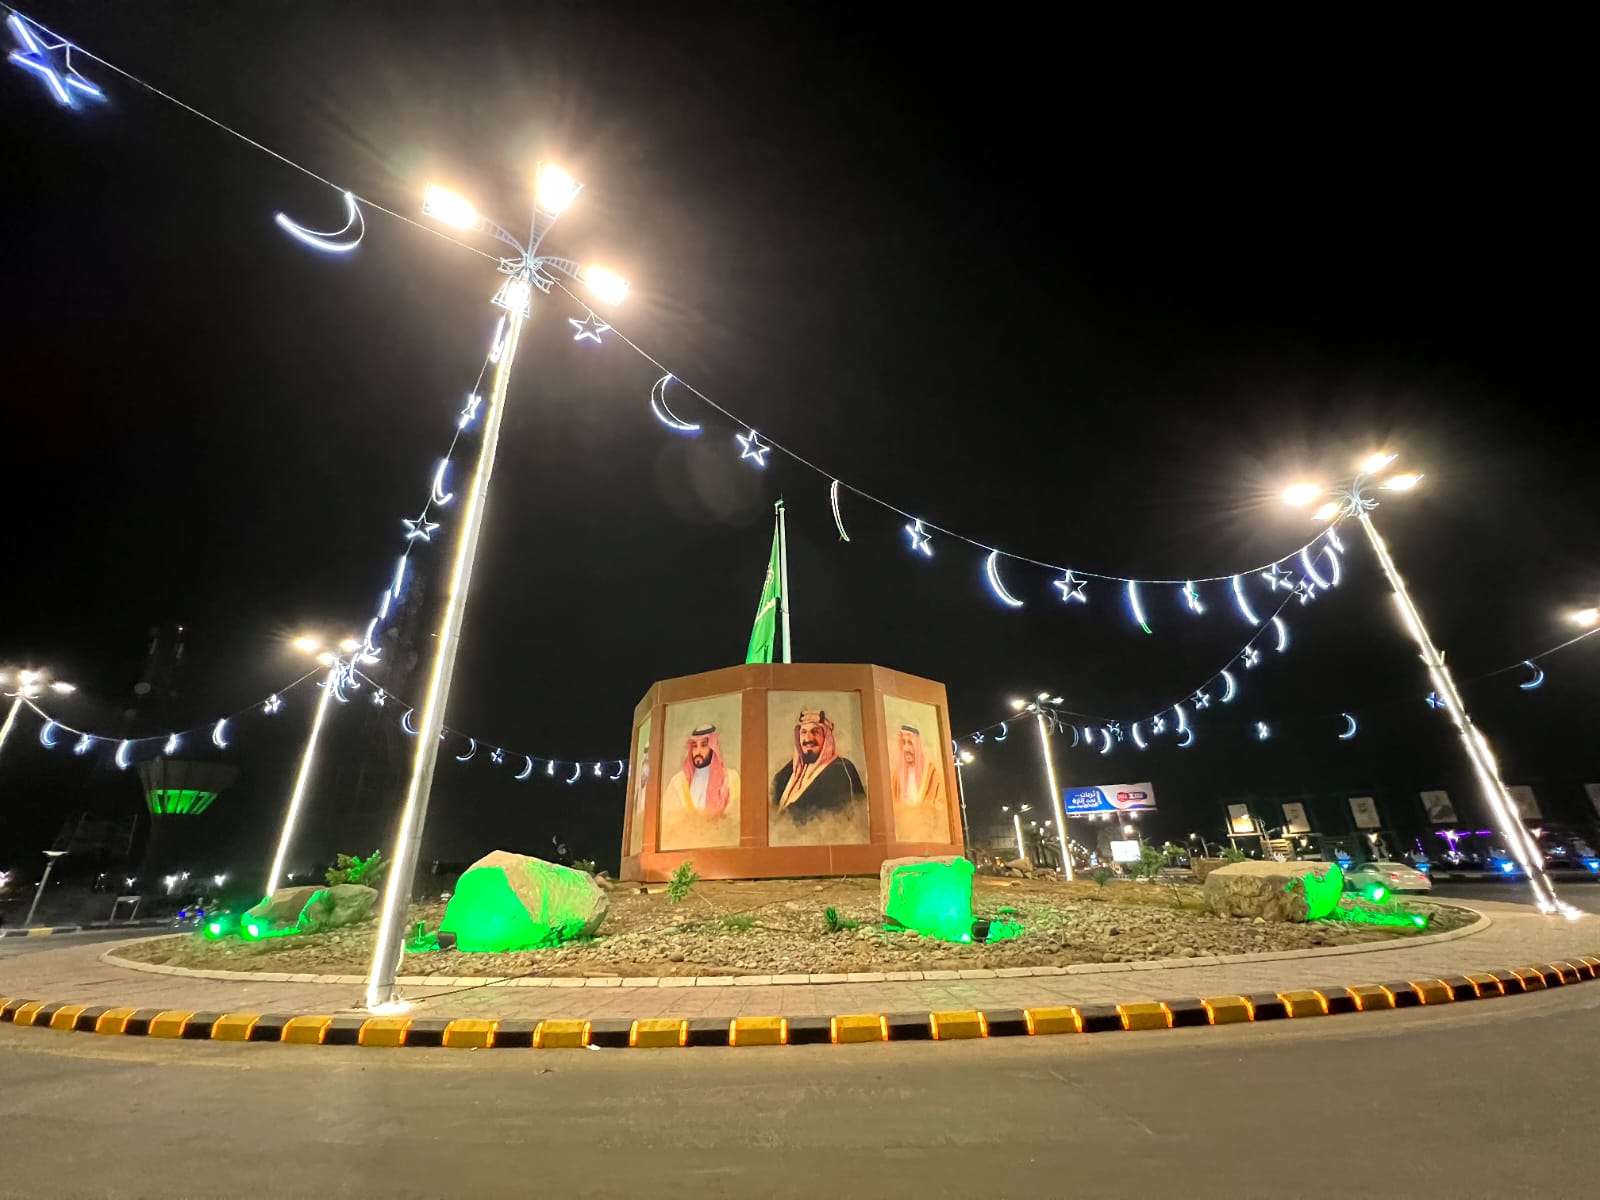 بلدية محافظة صبيا تُضيء شوارعها بمجسمات وإضاءات الزينة